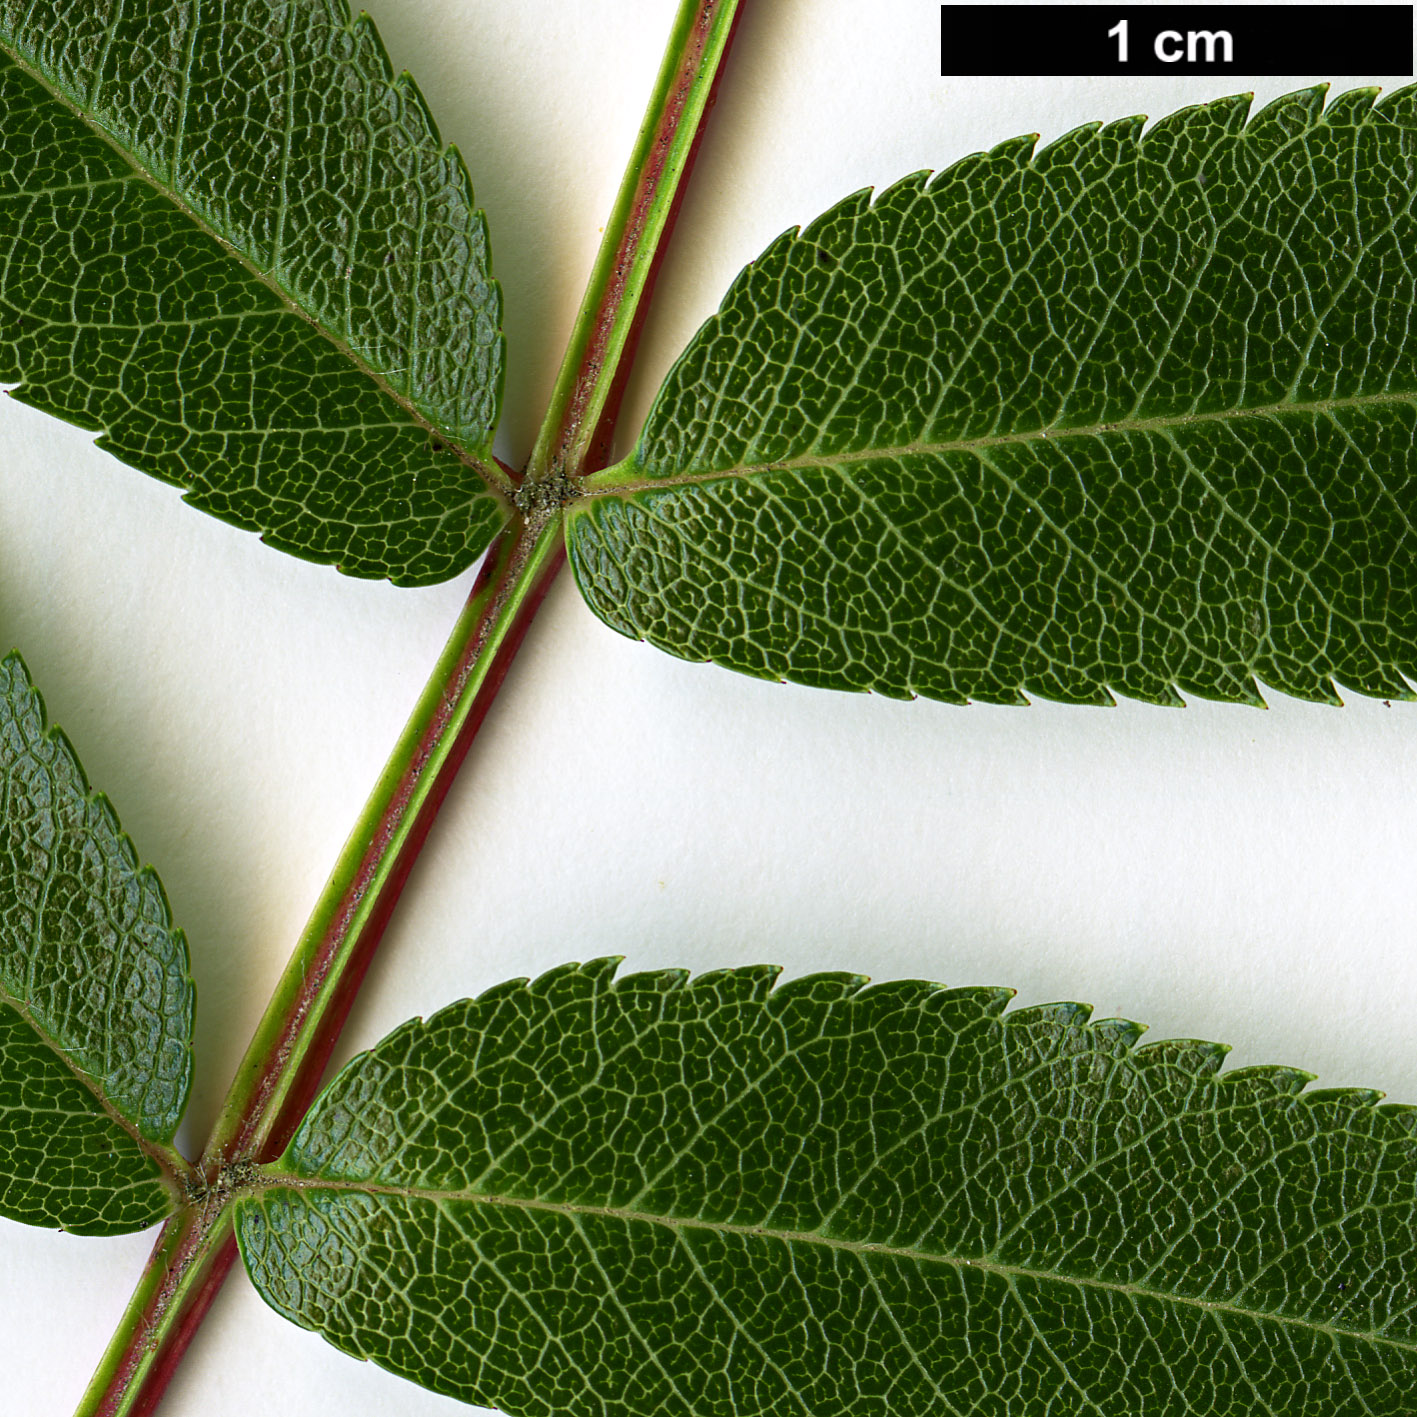 High resolution image: Family: Rosaceae - Genus: Sorbus - Taxon: commixta - SpeciesSub: var. rufoferruginea